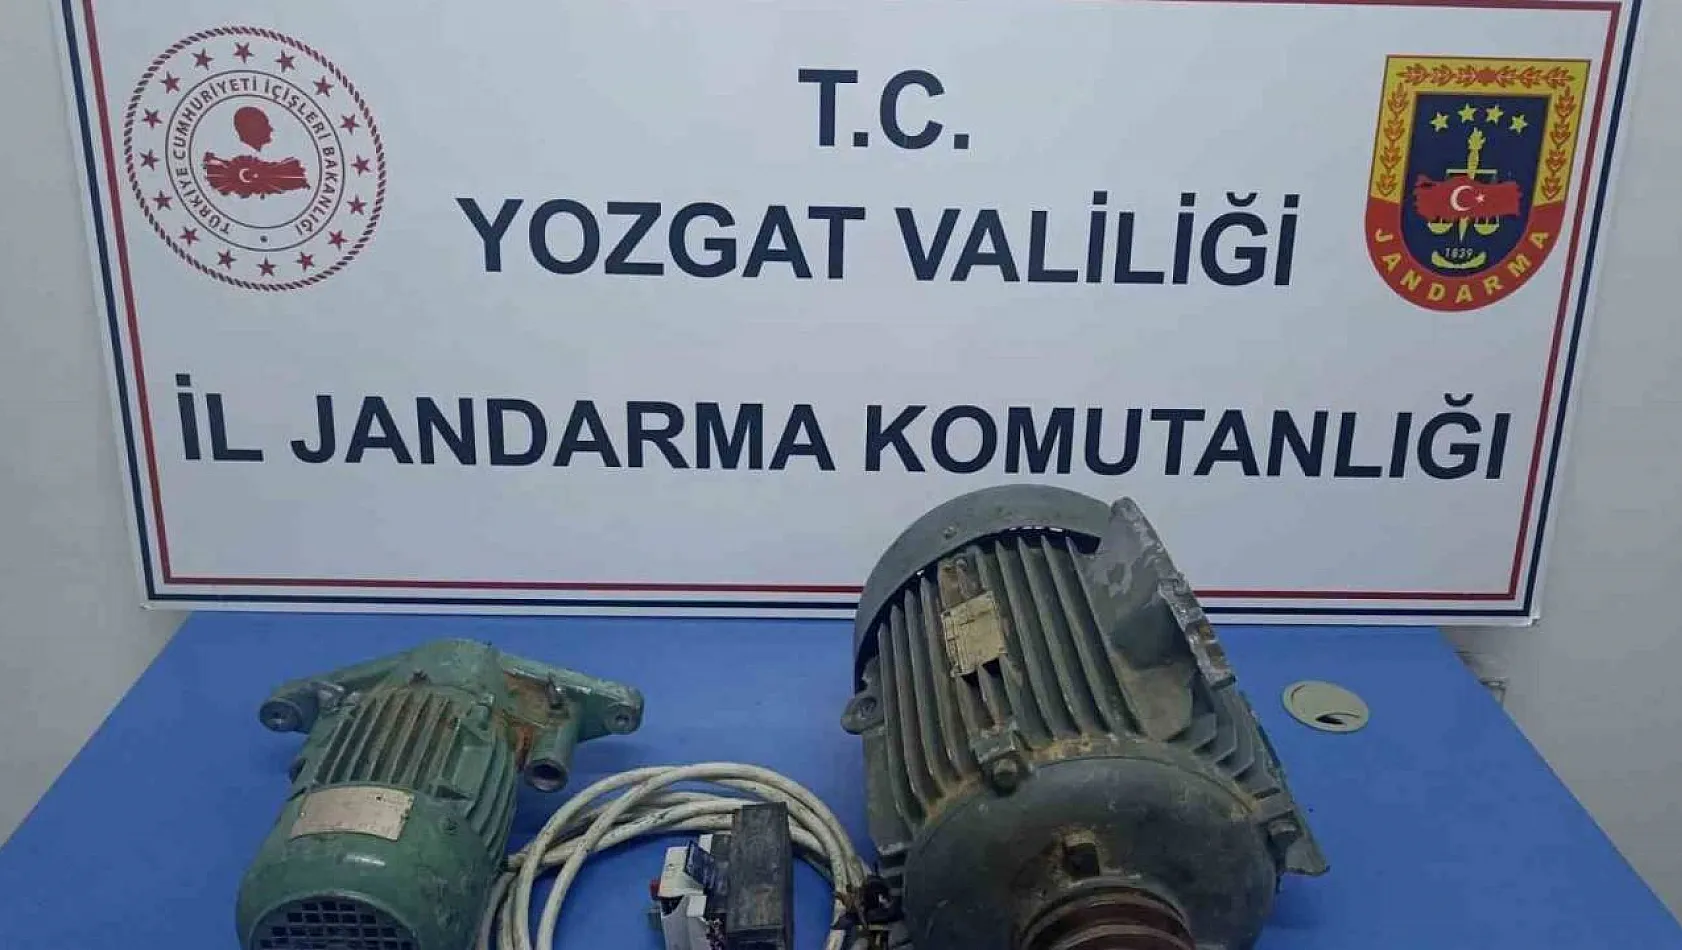 Yozgat'ta hızar dinamosu ve elektrik kablosu çalan 2 zanlı tutuklandı